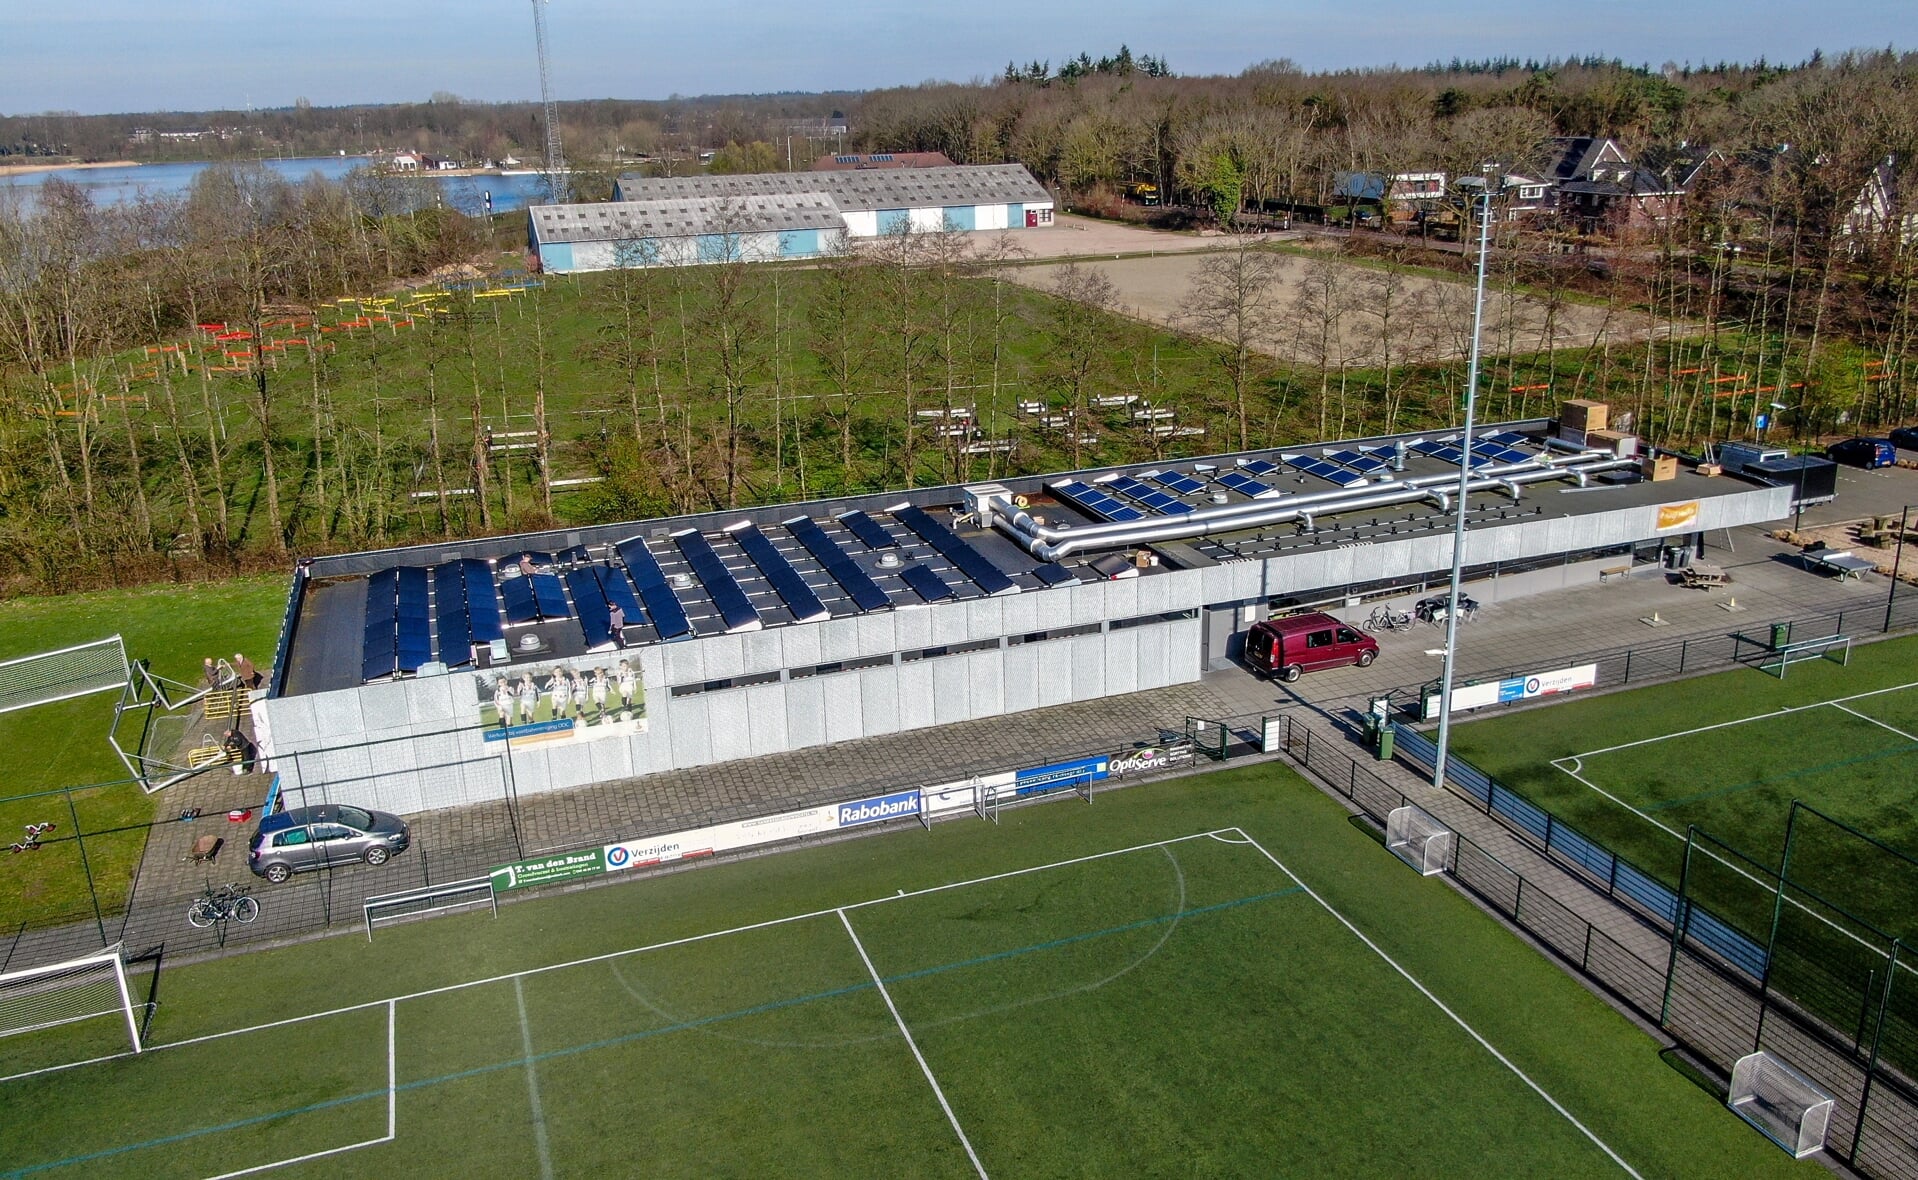 De accommodatie van ODC in sportpark Wagenaars op het Essche Heike werd medio 2020 al volgelegd met zonnenapelen. Alle sportvoorzieningen sneller verduurzamen kan helpen energielasten terug te dringen.